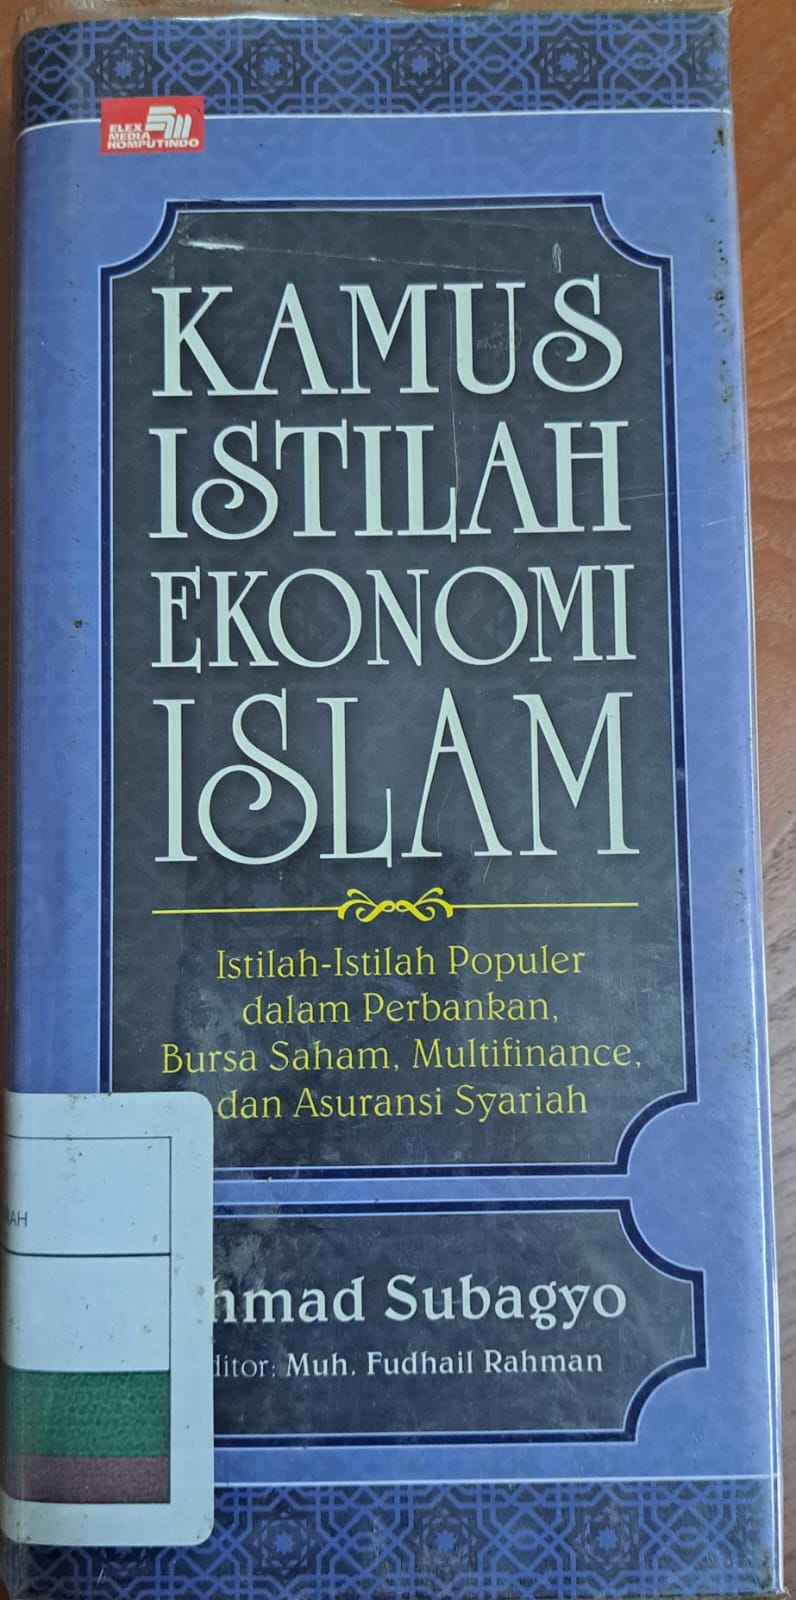 Kamus istilah ekonomi islam :  Istilah-istilah populer dalam perbankan,bursa saham,multifinance dan asuransi syariah